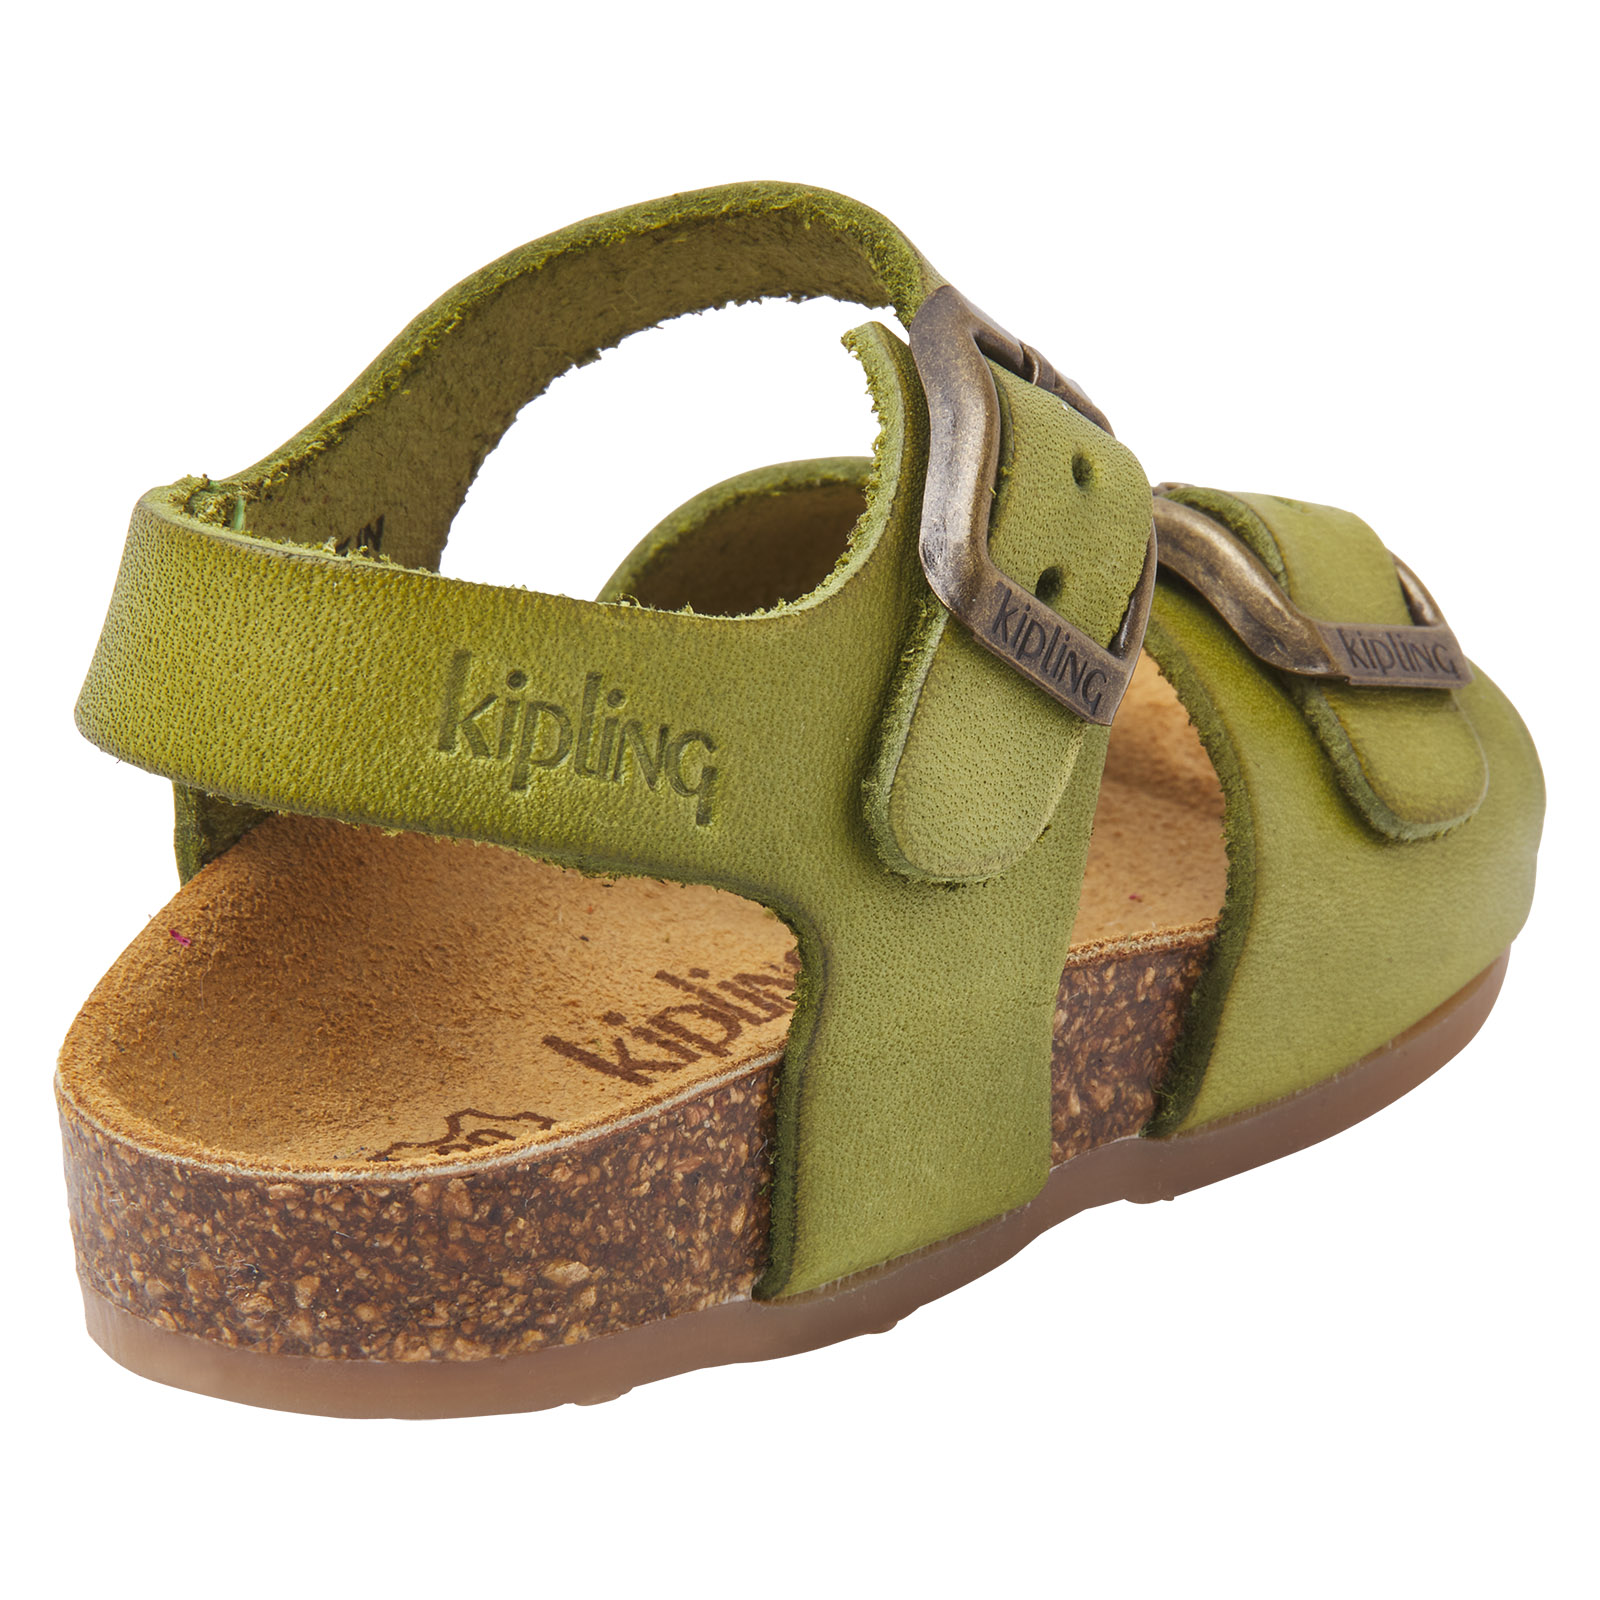 Groene leren sandalen voor jongens met gespsluiting, Kipling